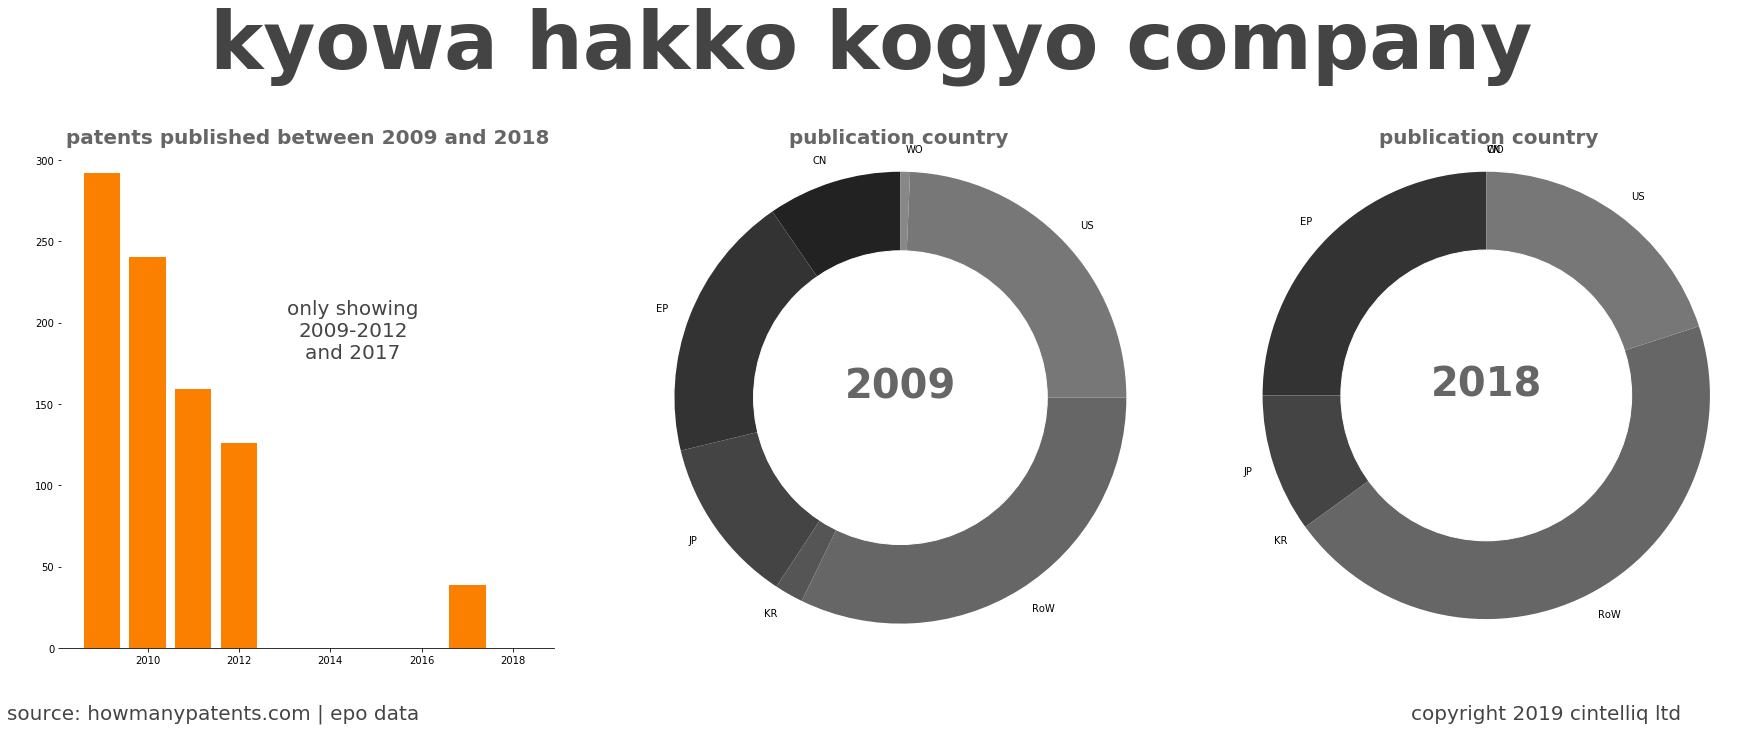 summary of patents for Kyowa Hakko Kogyo Company